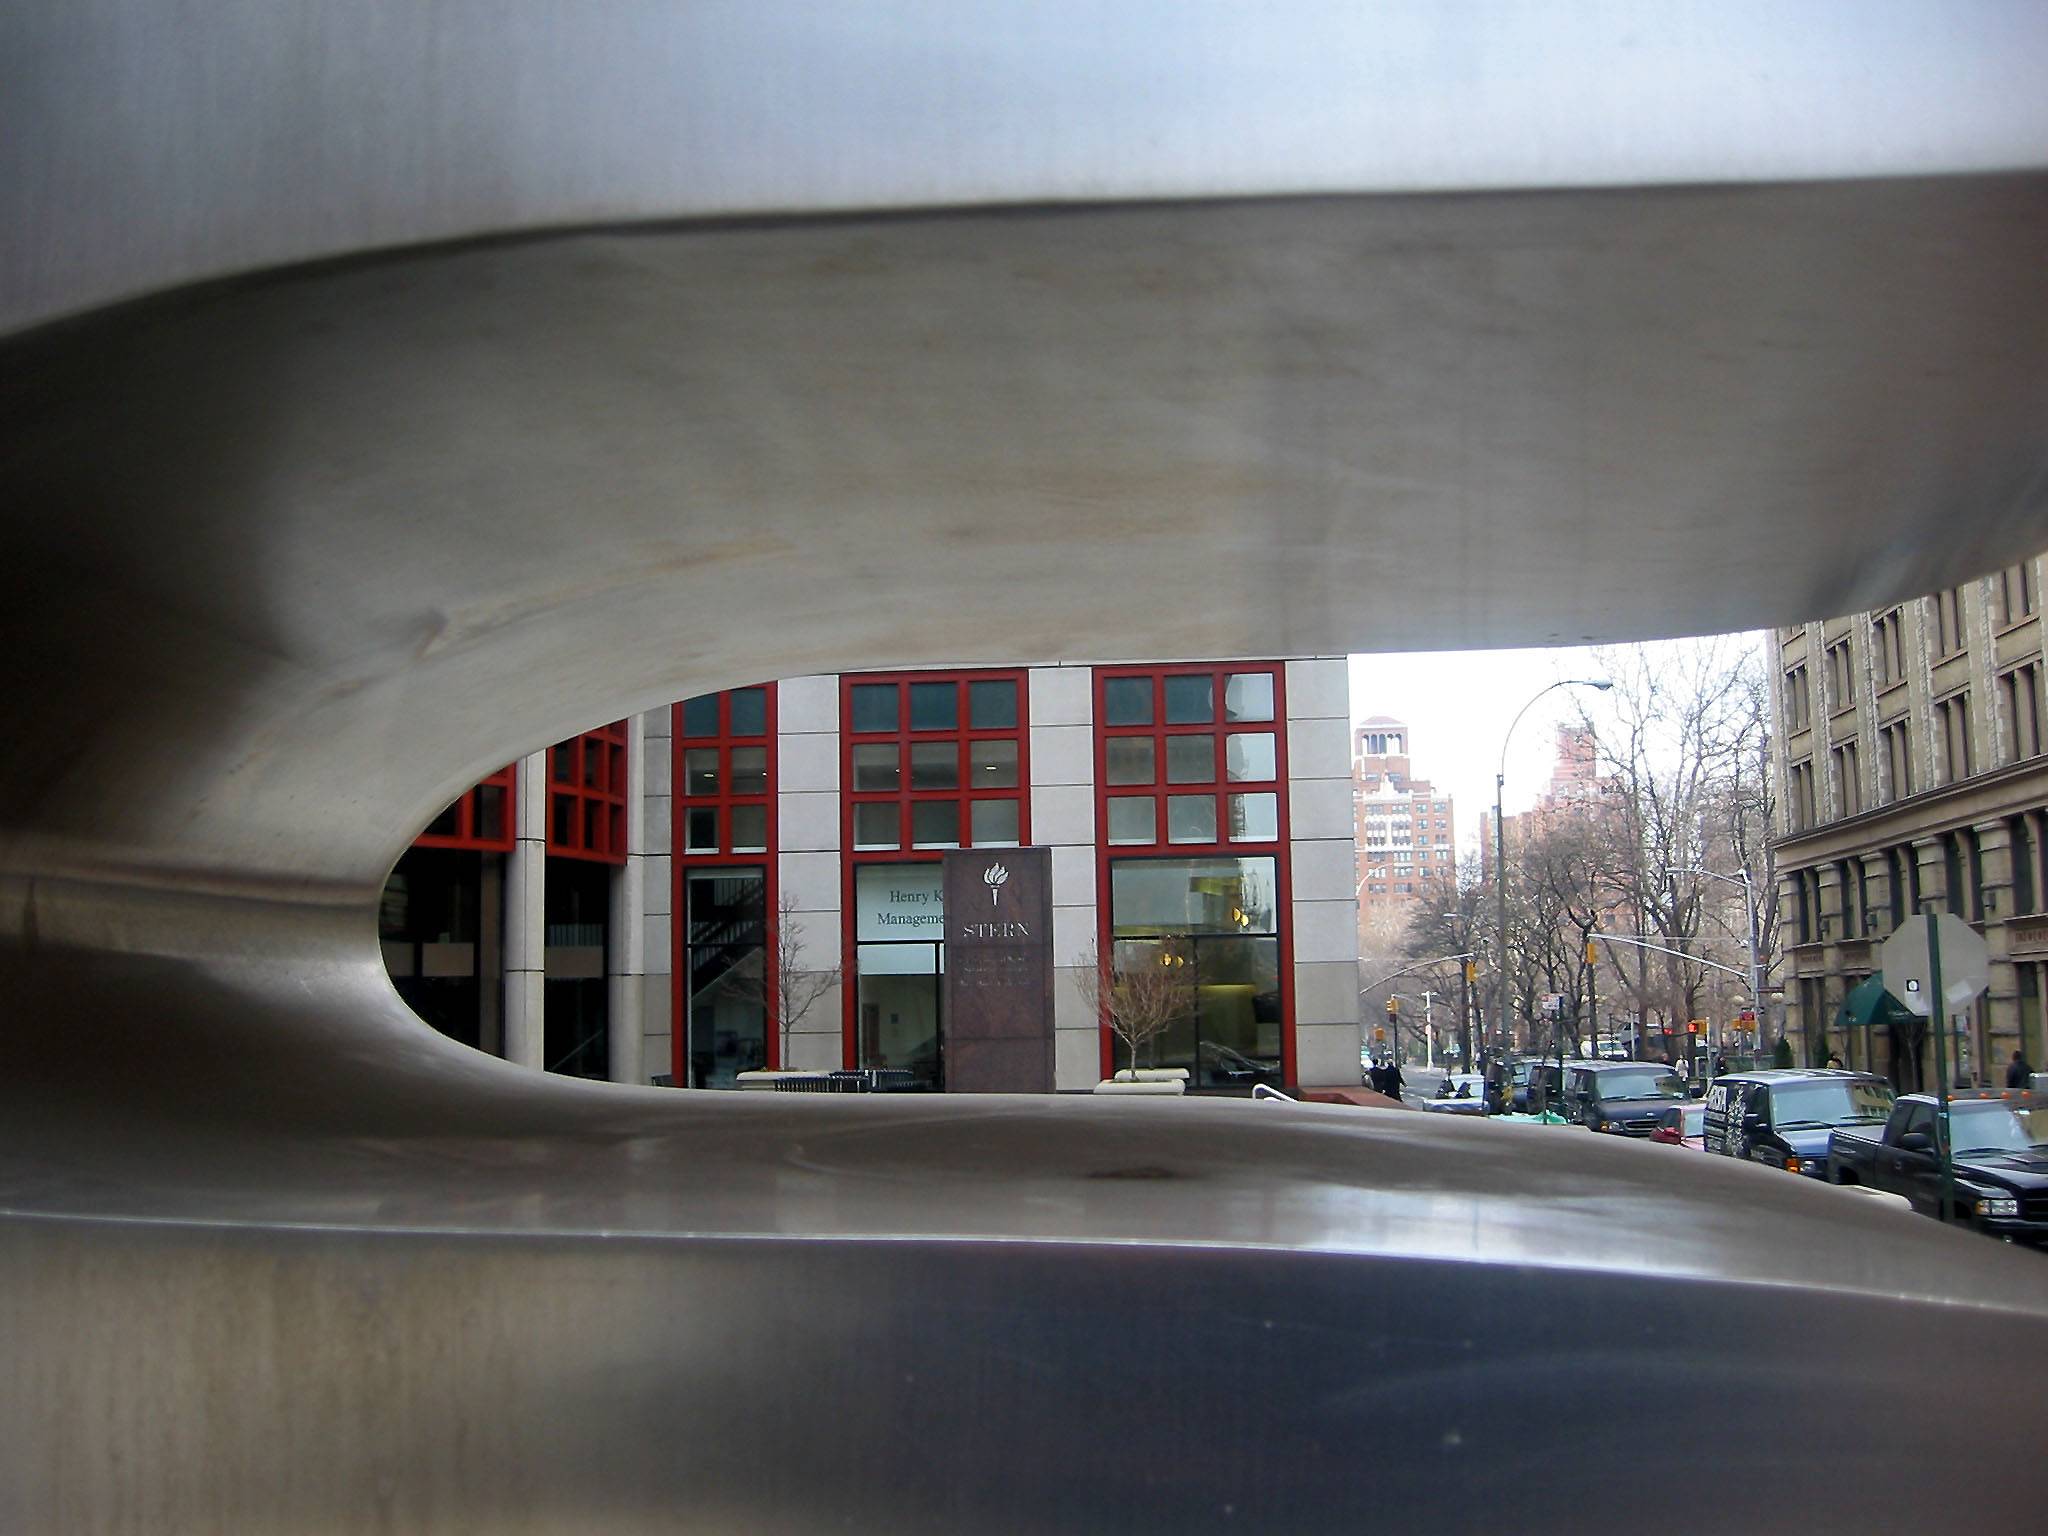 NYU Business School & WSS Seen Through Jean Arps Sculpture